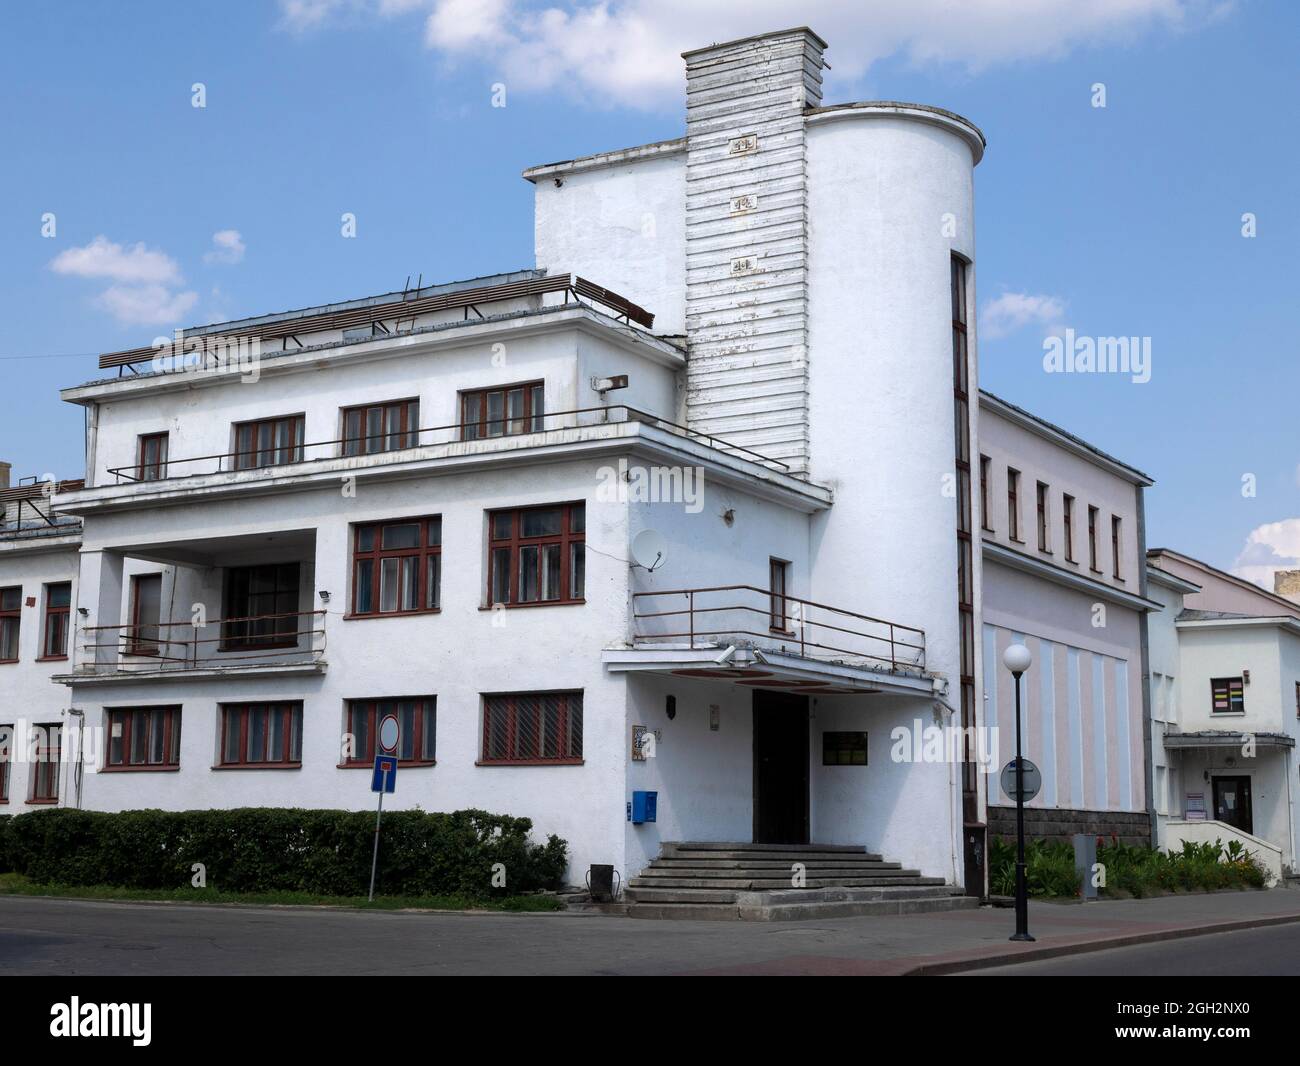 Grodno, Bielorussia - 25 luglio 2021: Edificio Costruttivista, architettura sovietica degli anni '30 Foto Stock